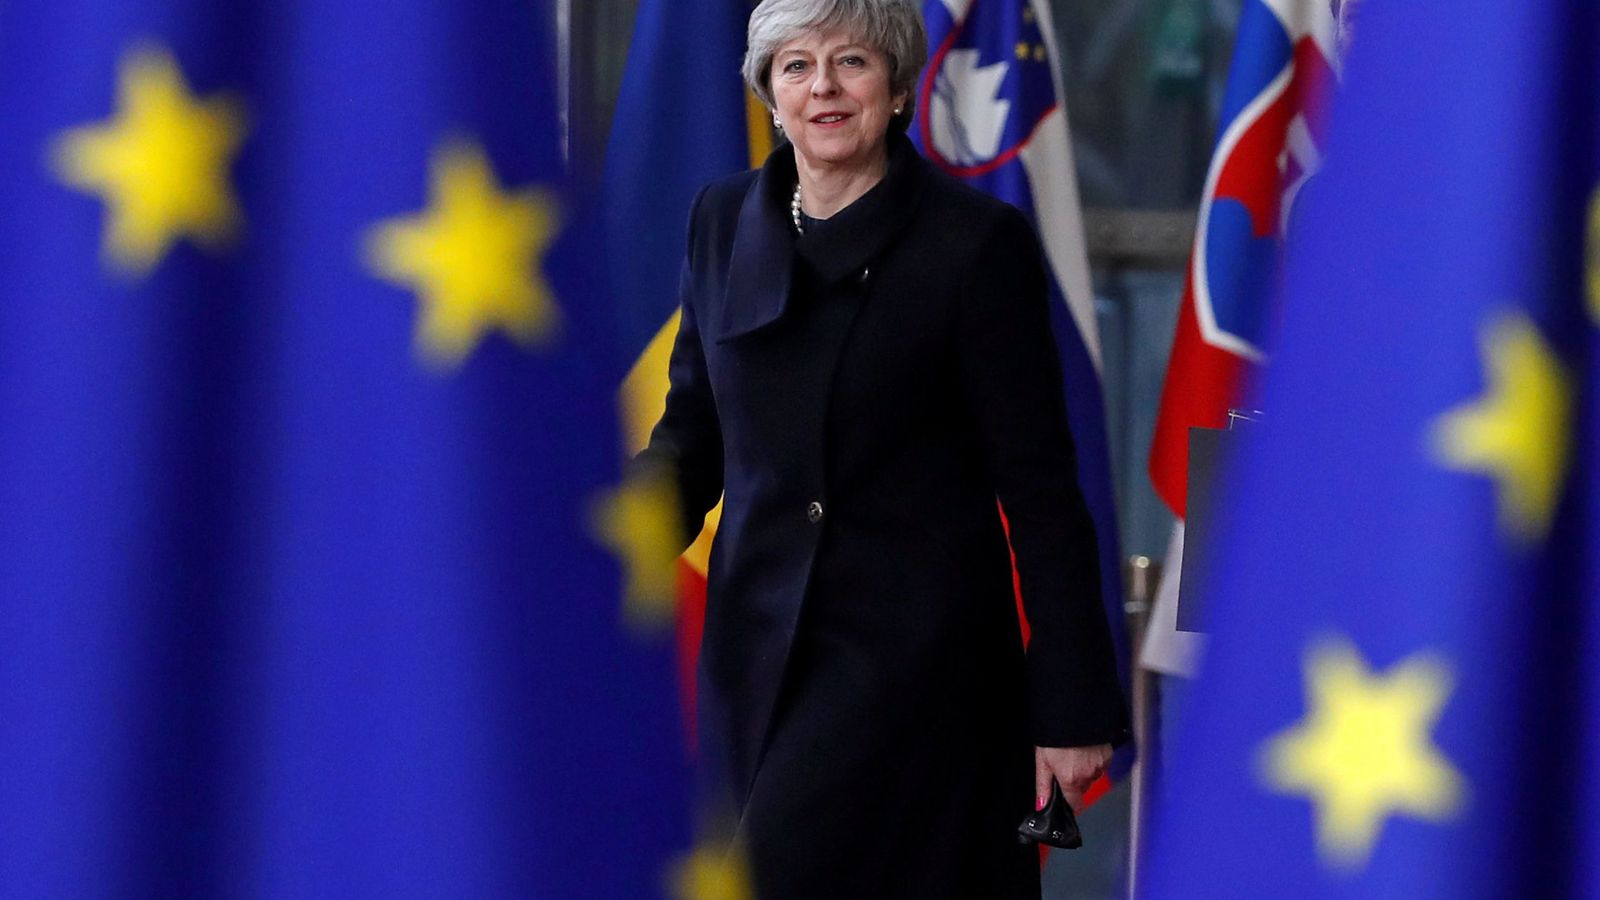 Foto: Theresa May a su llegada a la Cumbre de la UE en Bruselas, el 14 de diciembre de 2017. (Reuters)